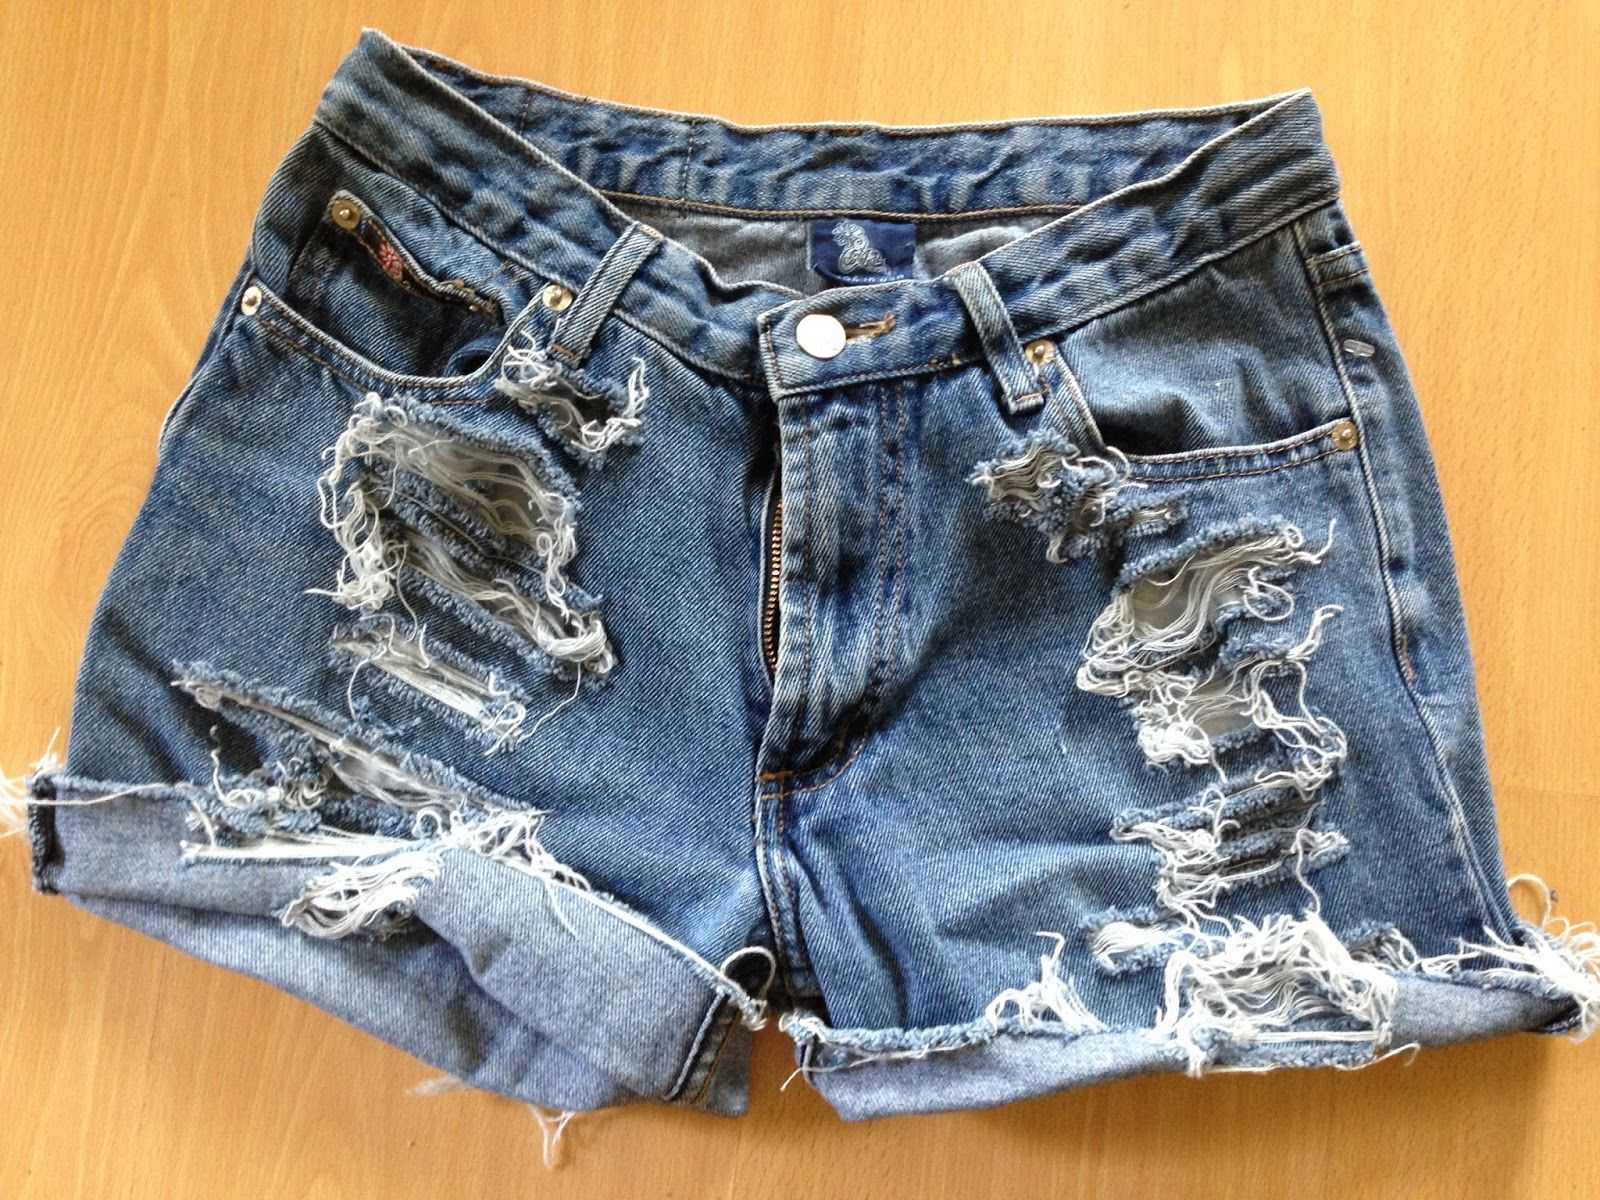 Что можно сделать из старых джинсов